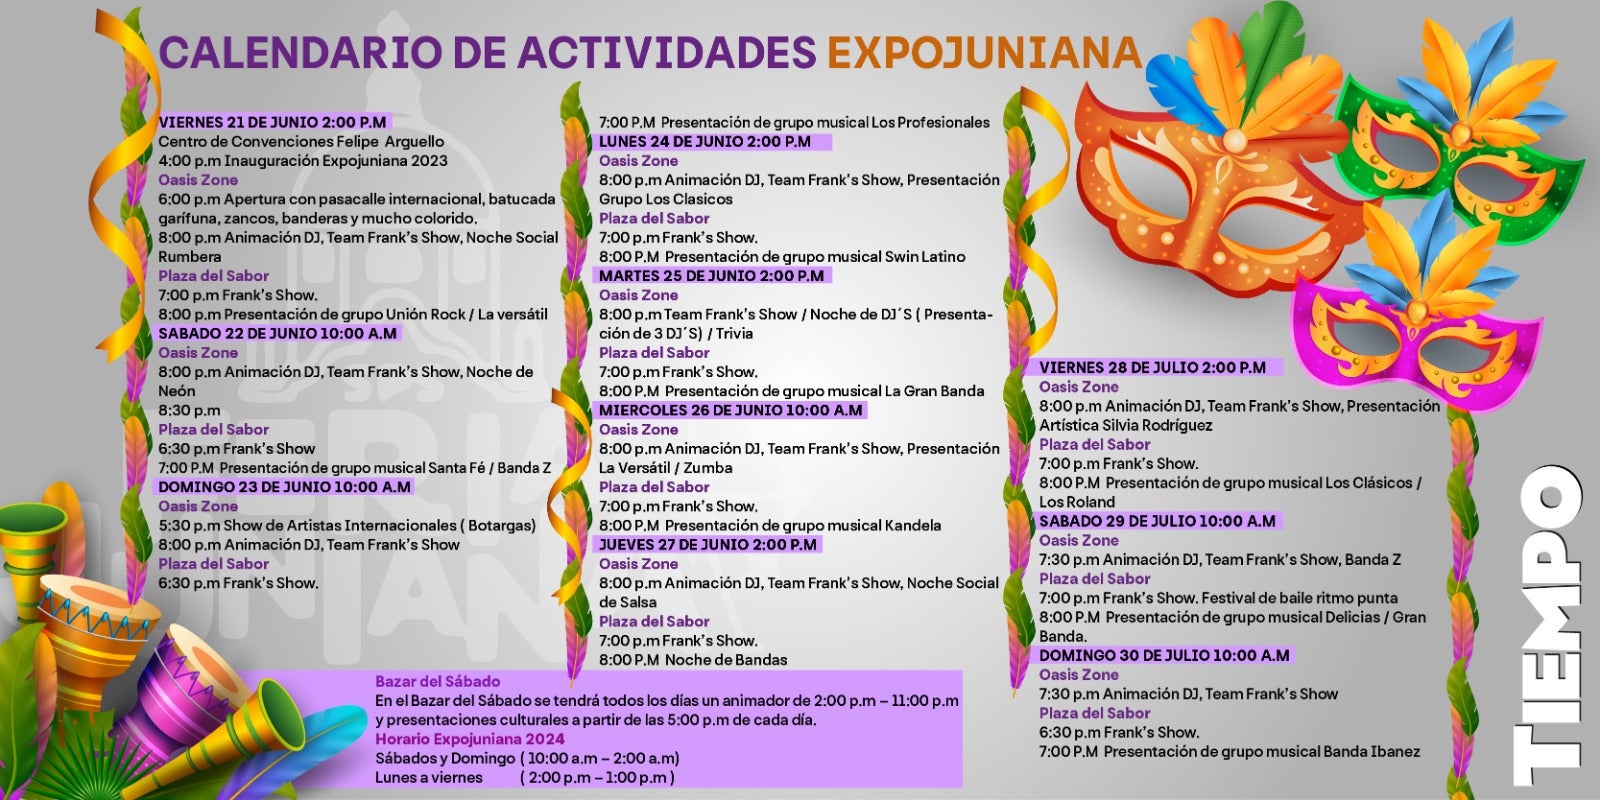 La ExpoJuniana estará abierto en el horario: sábado y domingo desde las 10:00 am y de lunes a jueves desde las 2:00 pm.